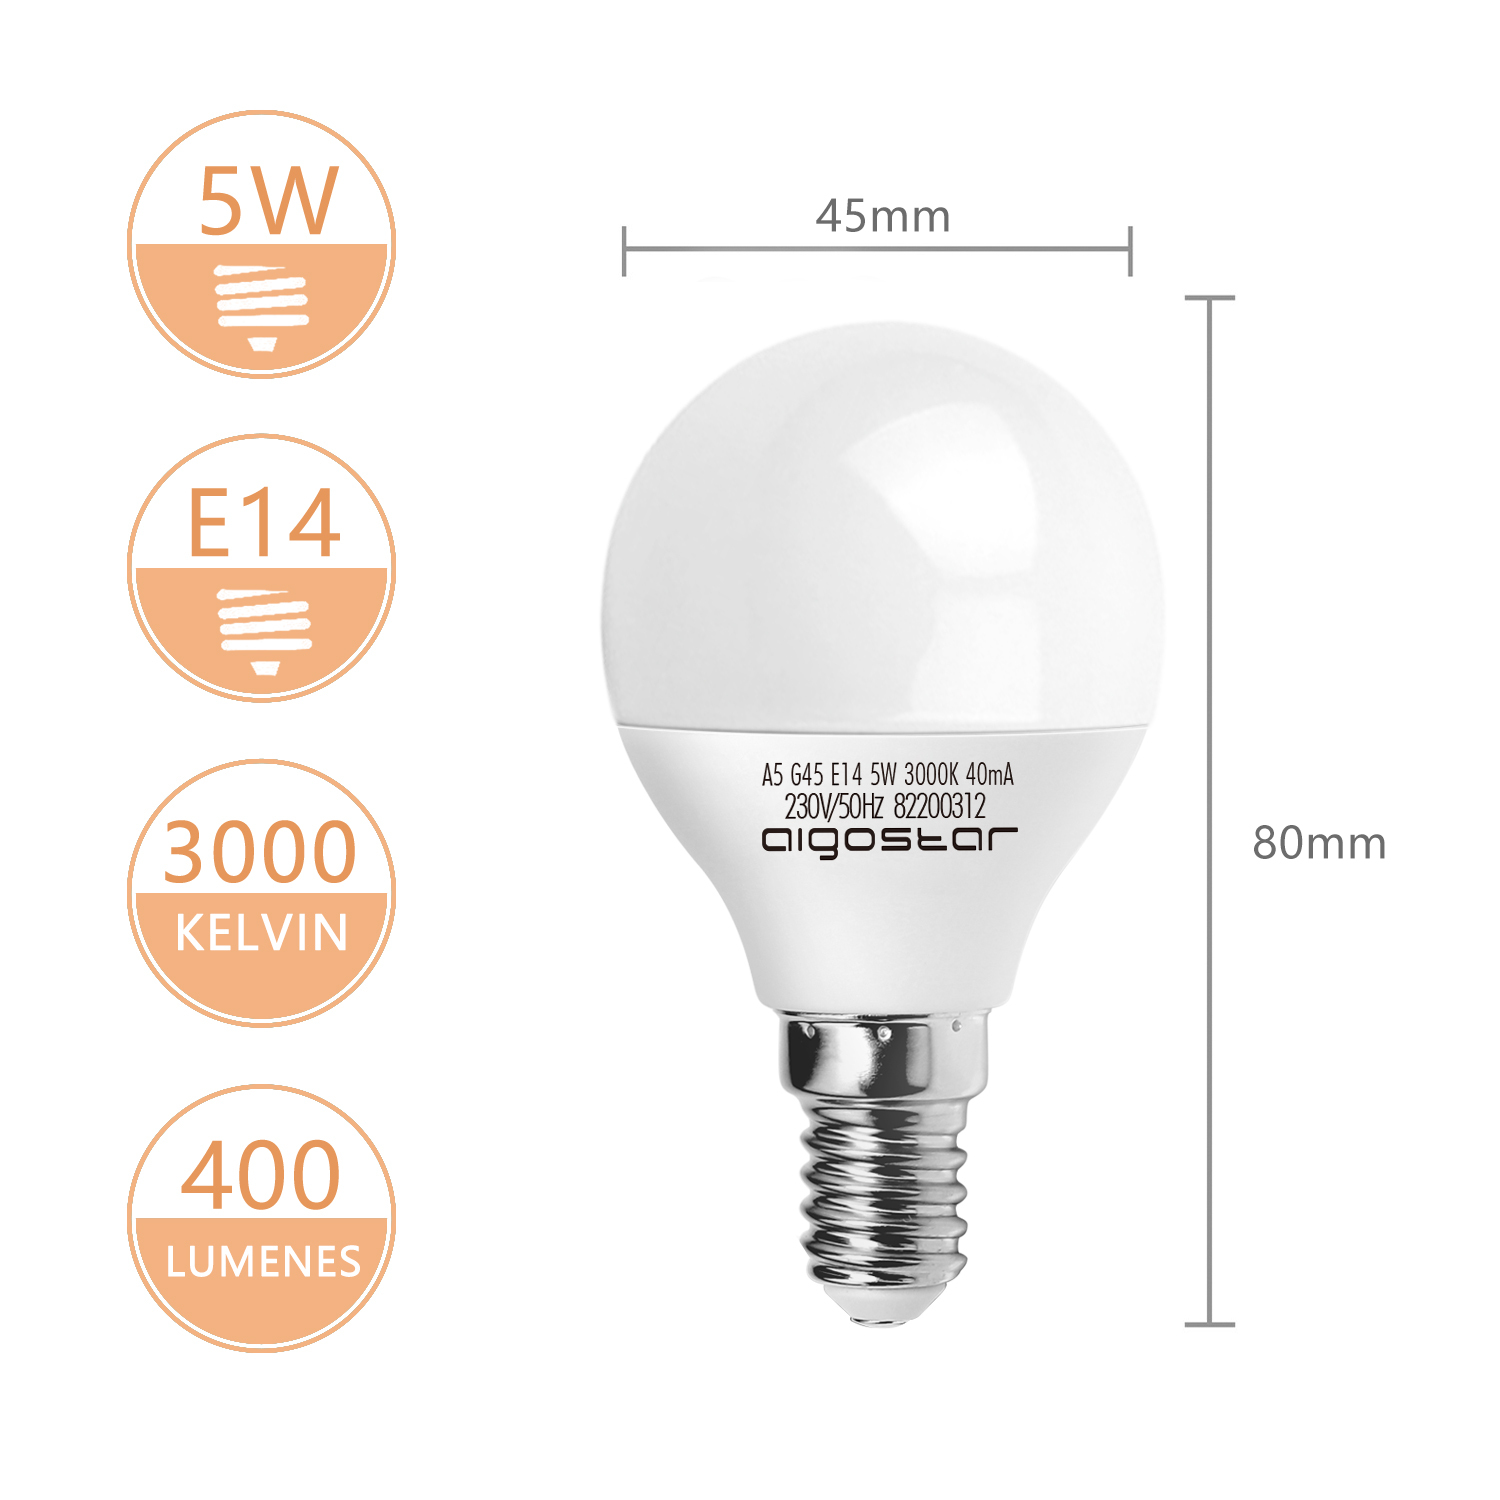 LED Lampe E14 5W Warmweiß 3000K, 400 Lumen, 230 Grad Abstrahlwinkel, Multipack mit 10 Lampen